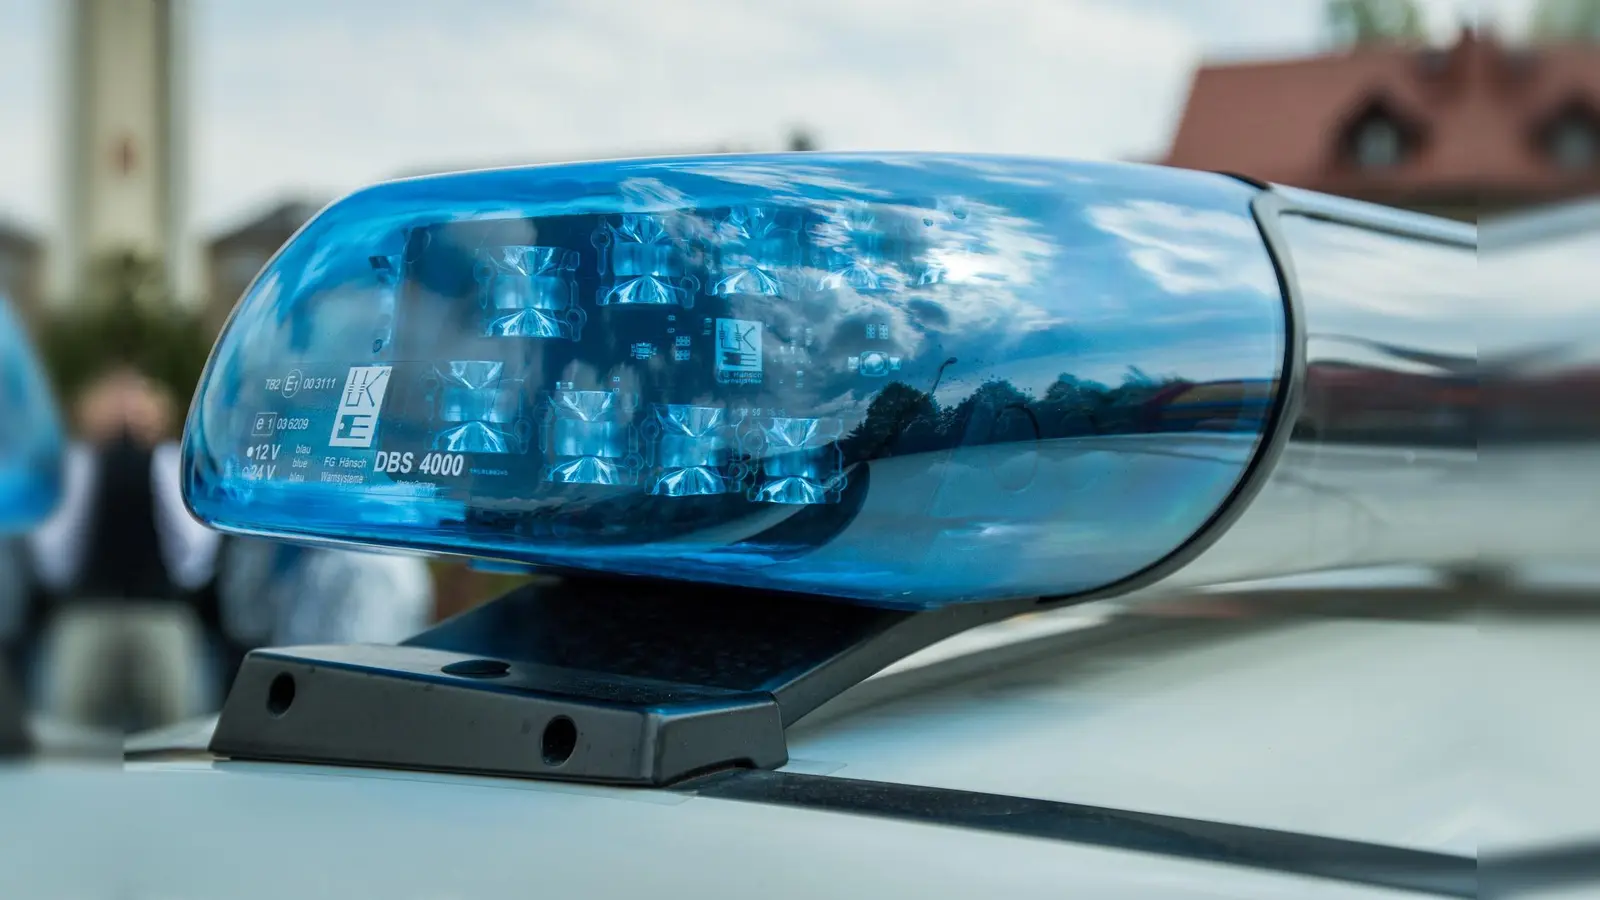 Autofahrer bei Unfall auf A 44 tödlich verletzt: Polizei sucht Zeugen (Symbolbild: Pixabay)